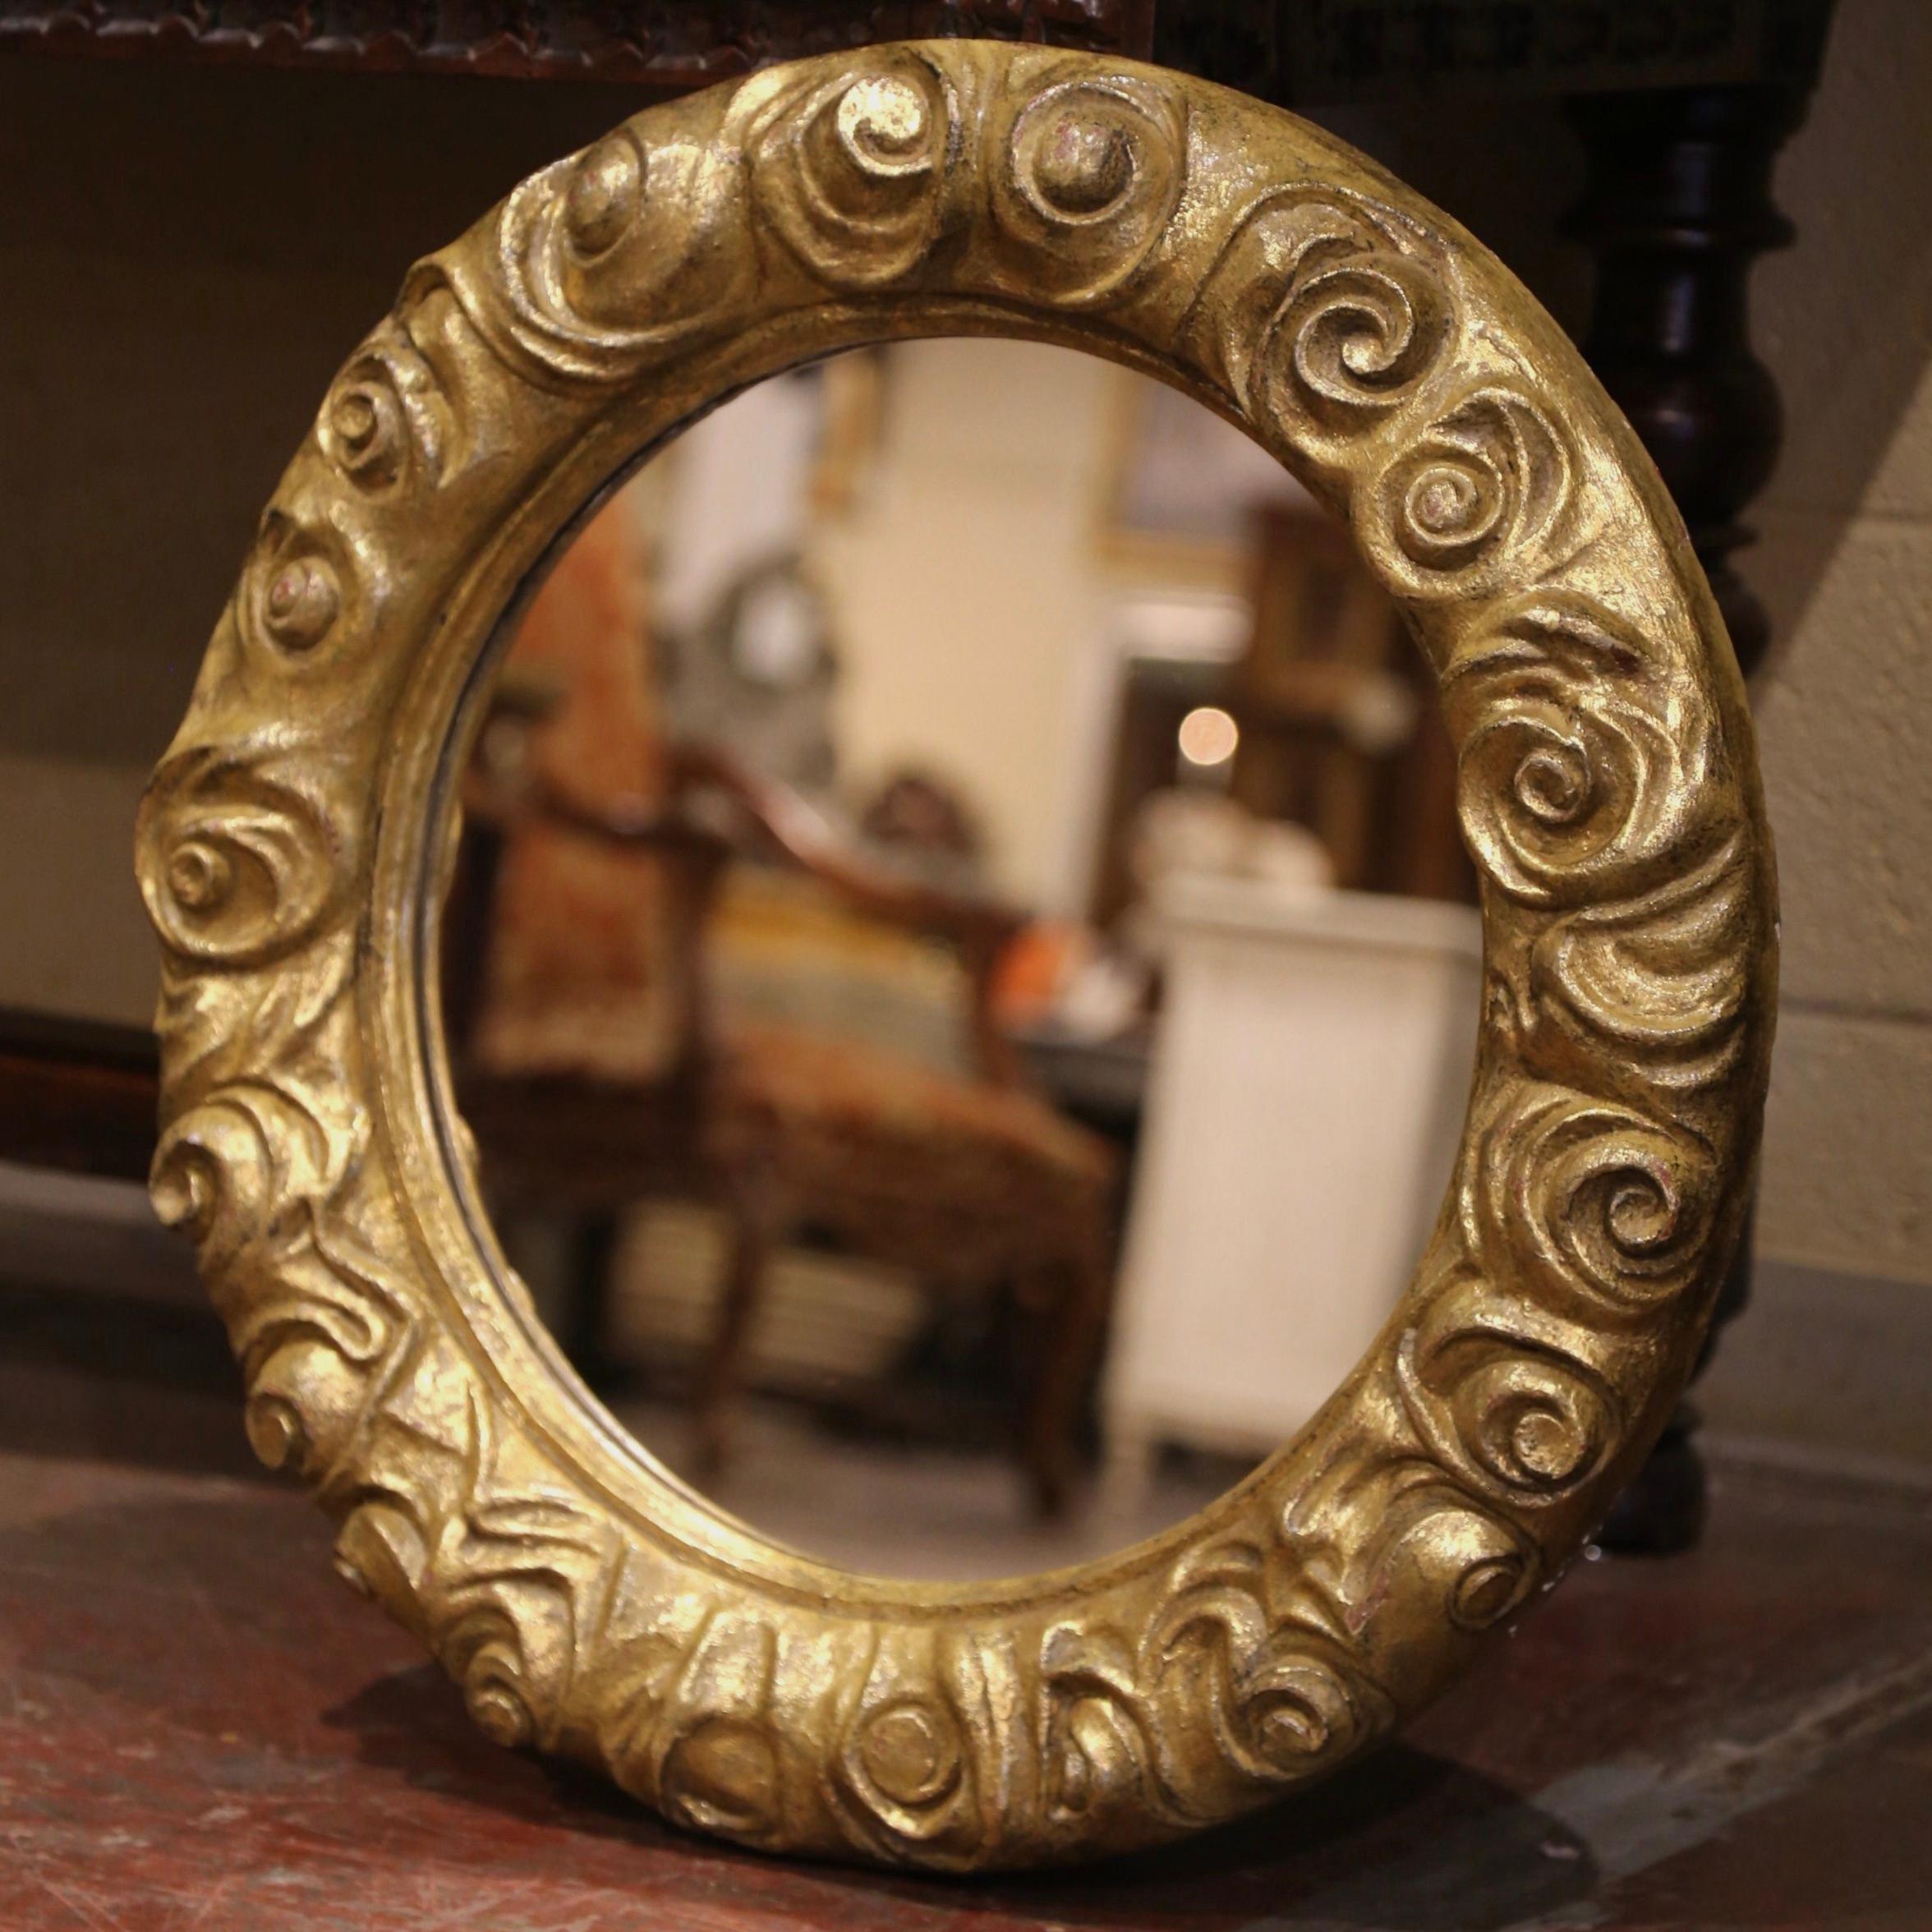 Dieser glänzende antike Wandspiegel ist ein Blickfang in jedem Raum. Der runde, in Frankreich um 1960 handgeschnitzte Spiegel ist mit geschnitzten Rosen- und Blumenmotiven in Hochrelief verziert. Das Stück hat eine Form und schimmernde Textur, die